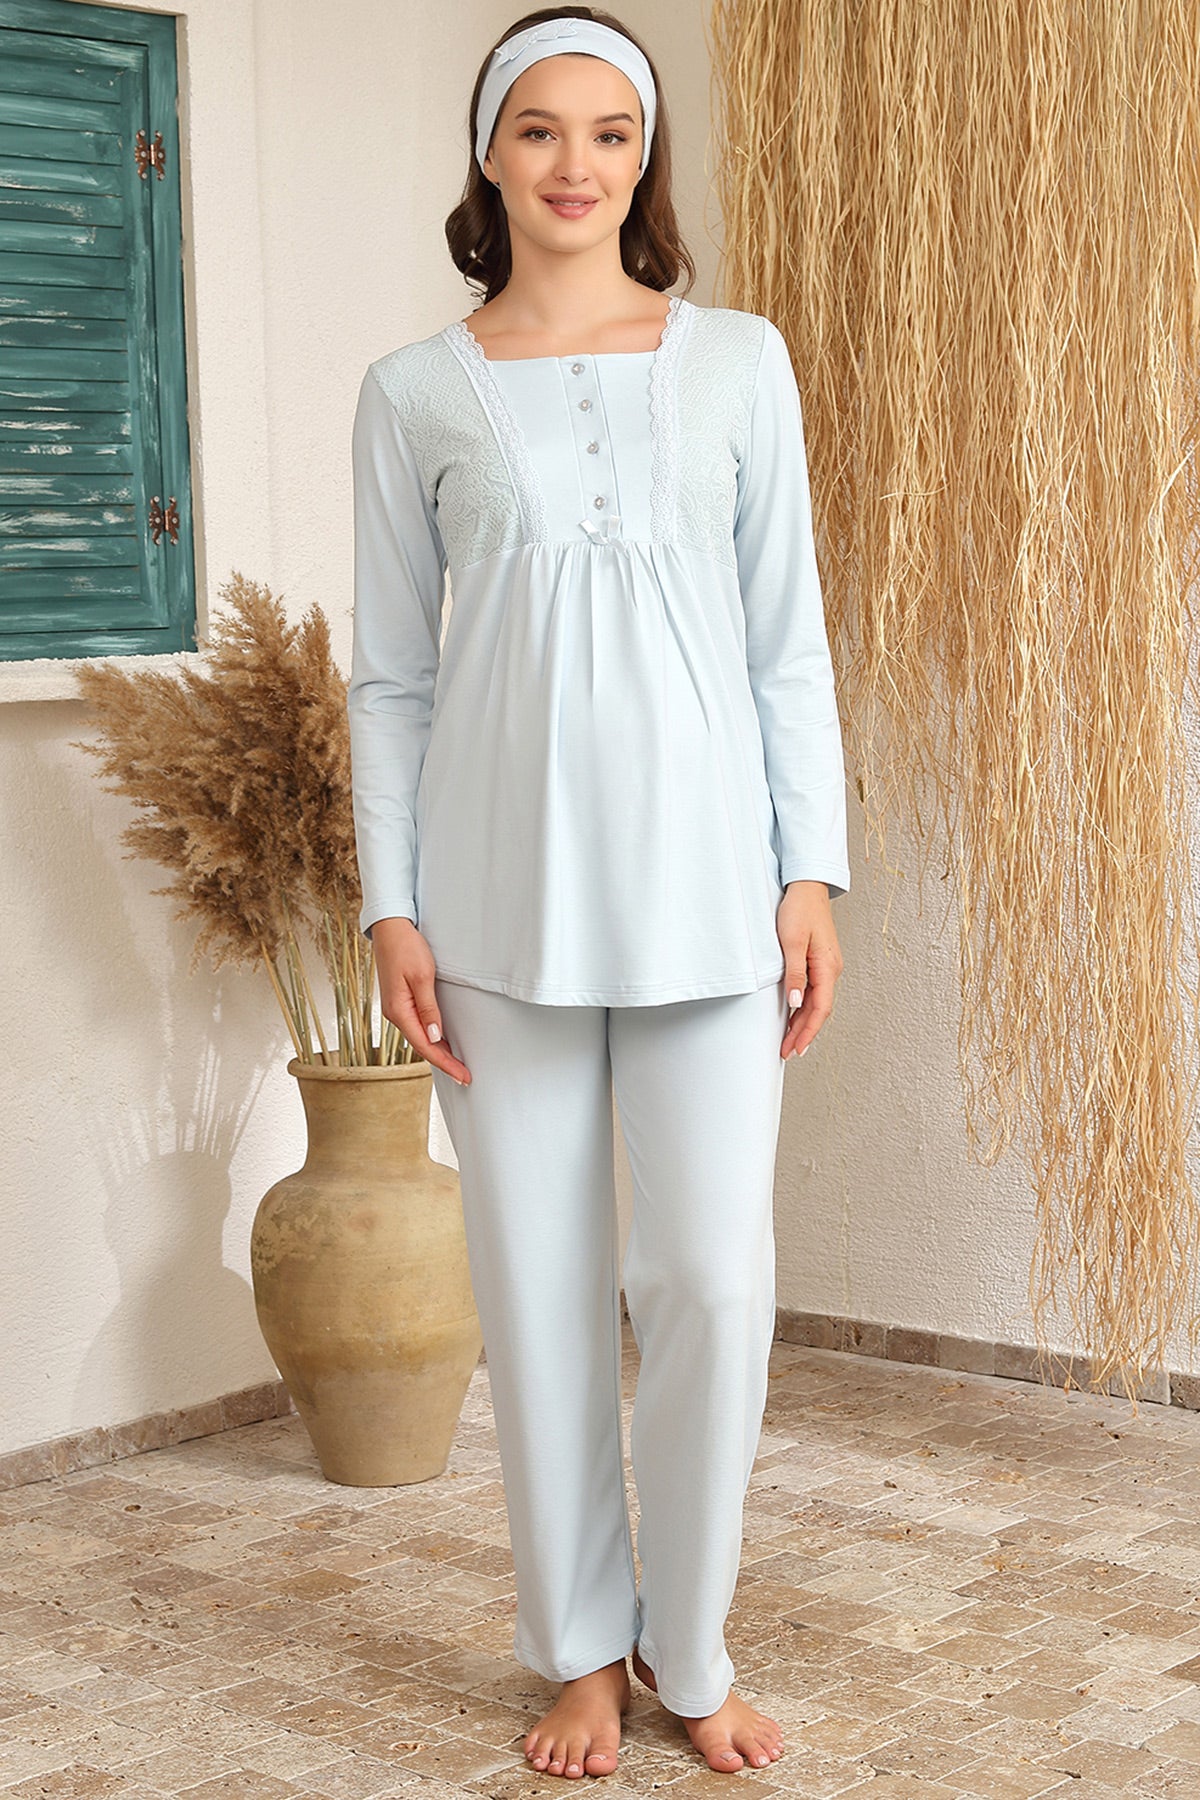 Lace 3-Pieces Maternity & Nursing Pajamas With Jacquard Robe Blue - 4412